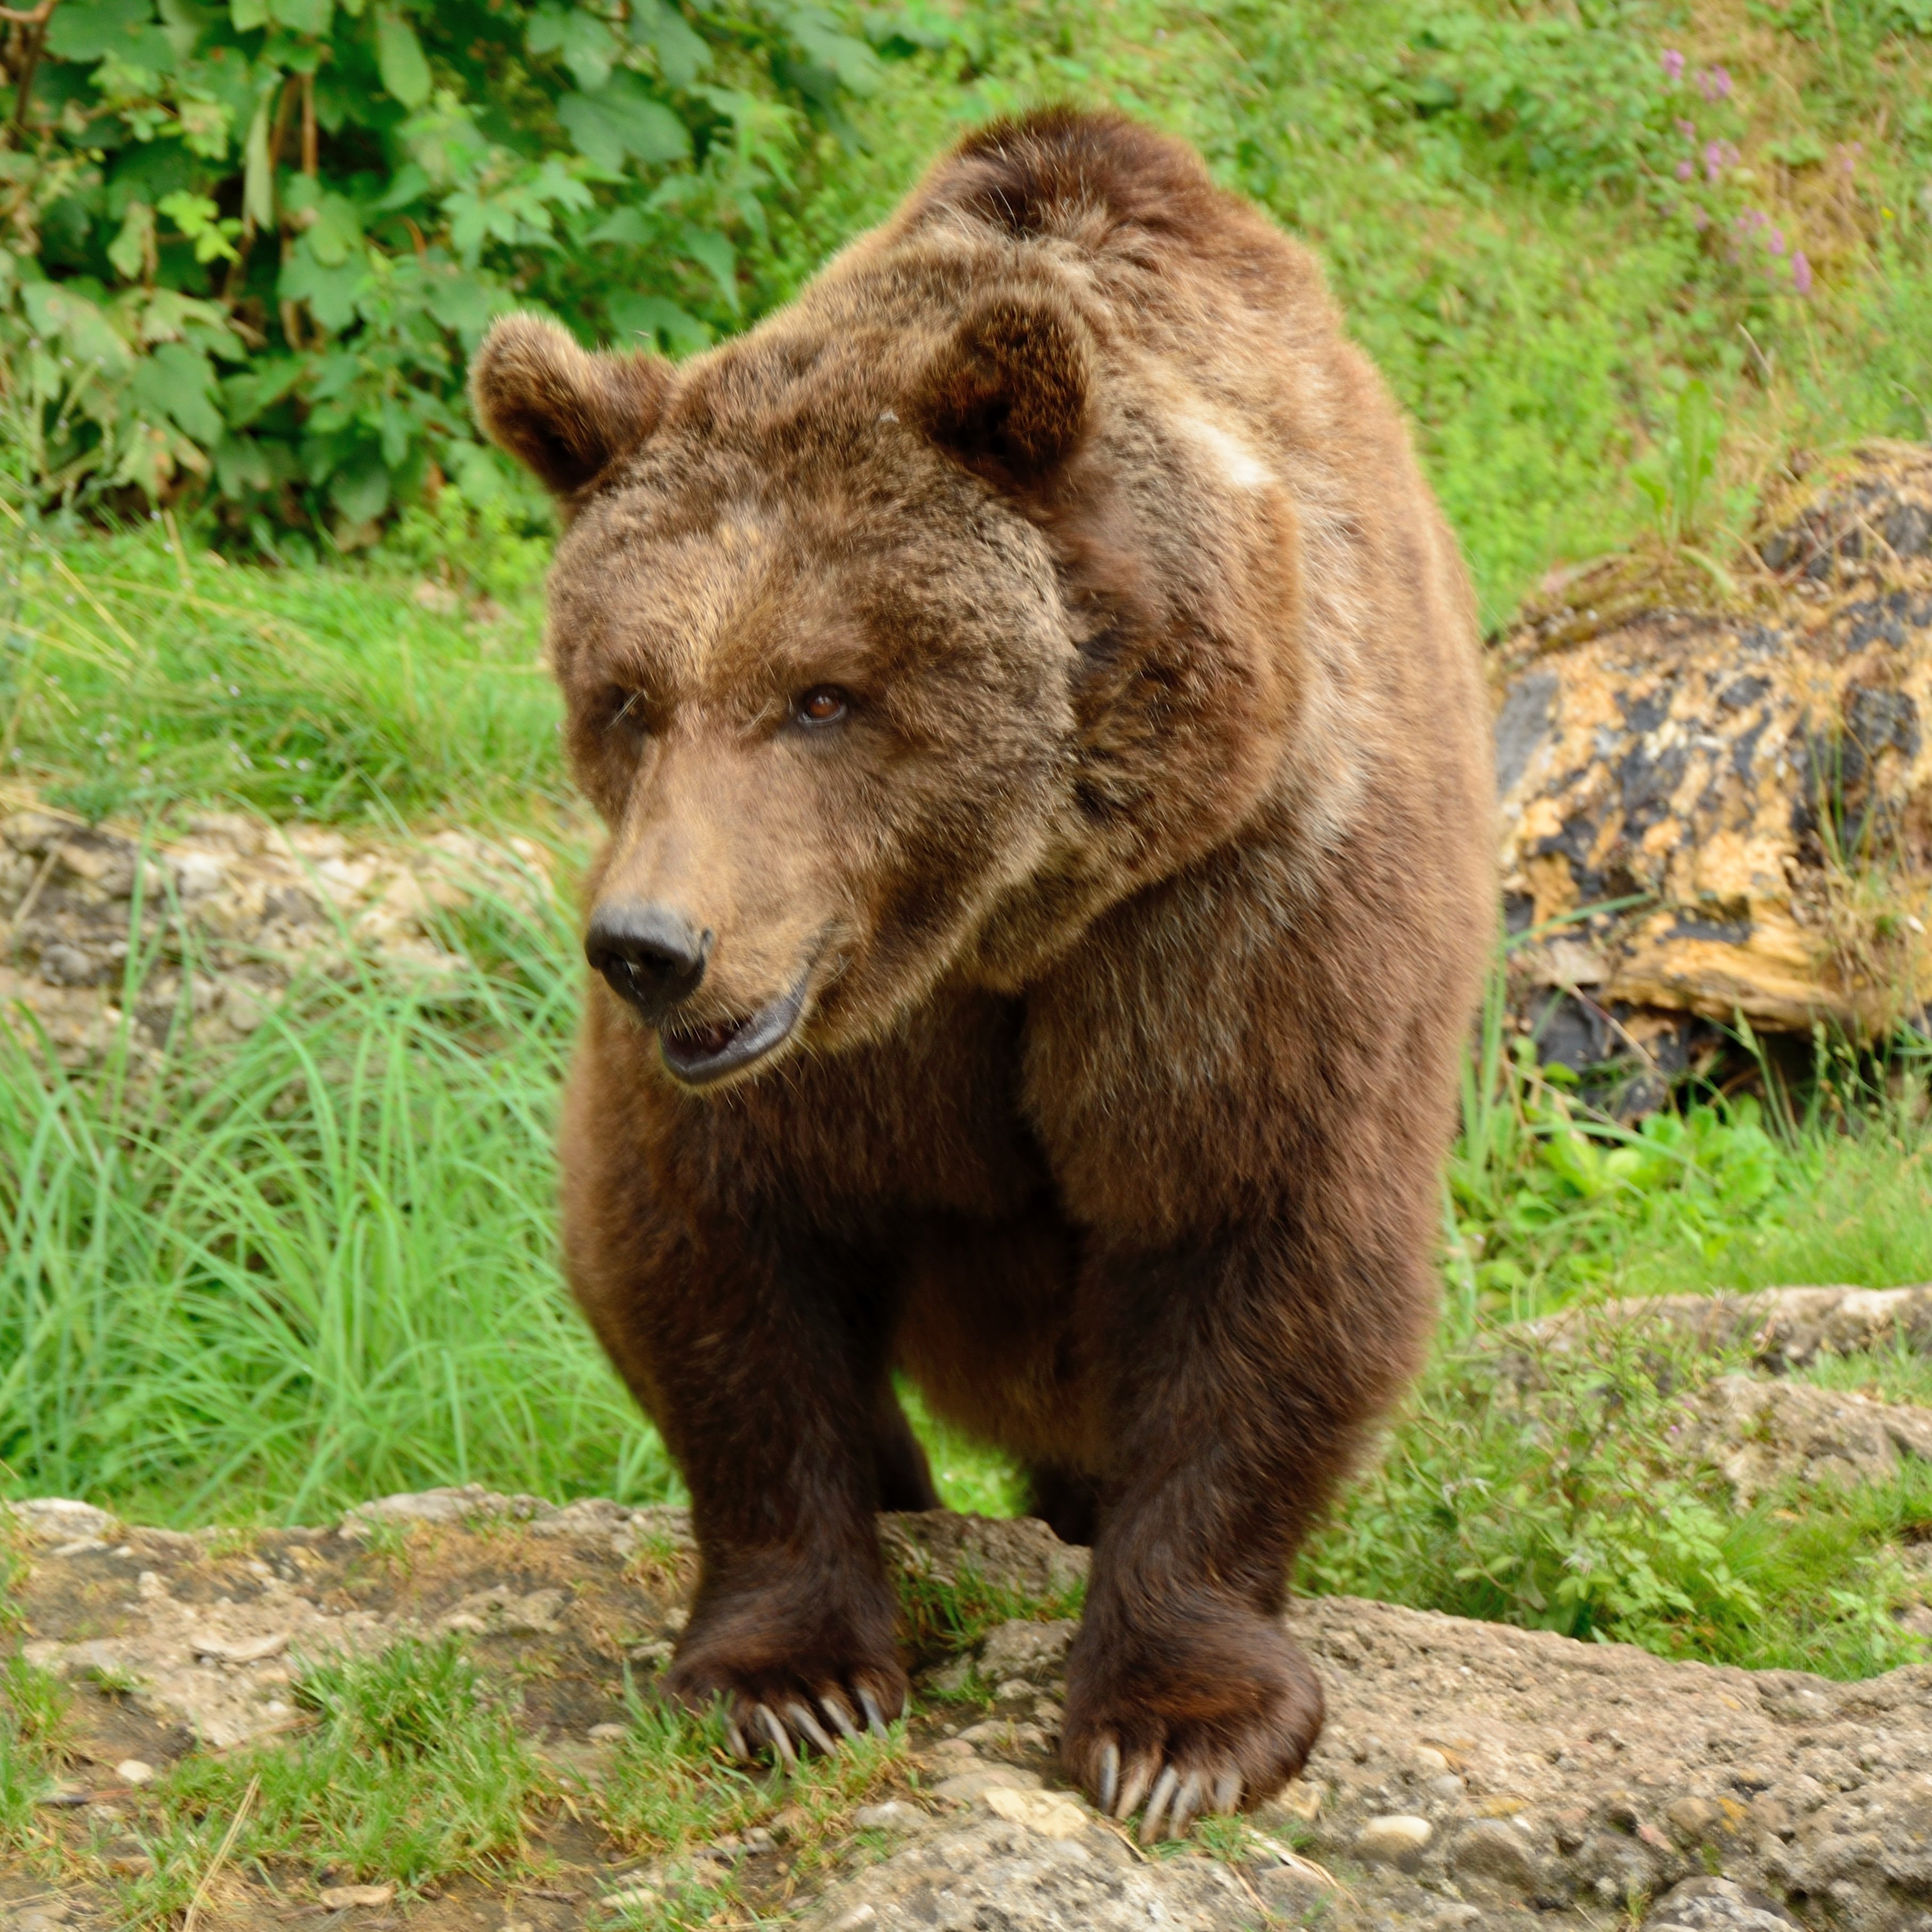 Медведь крупное млекопитающее